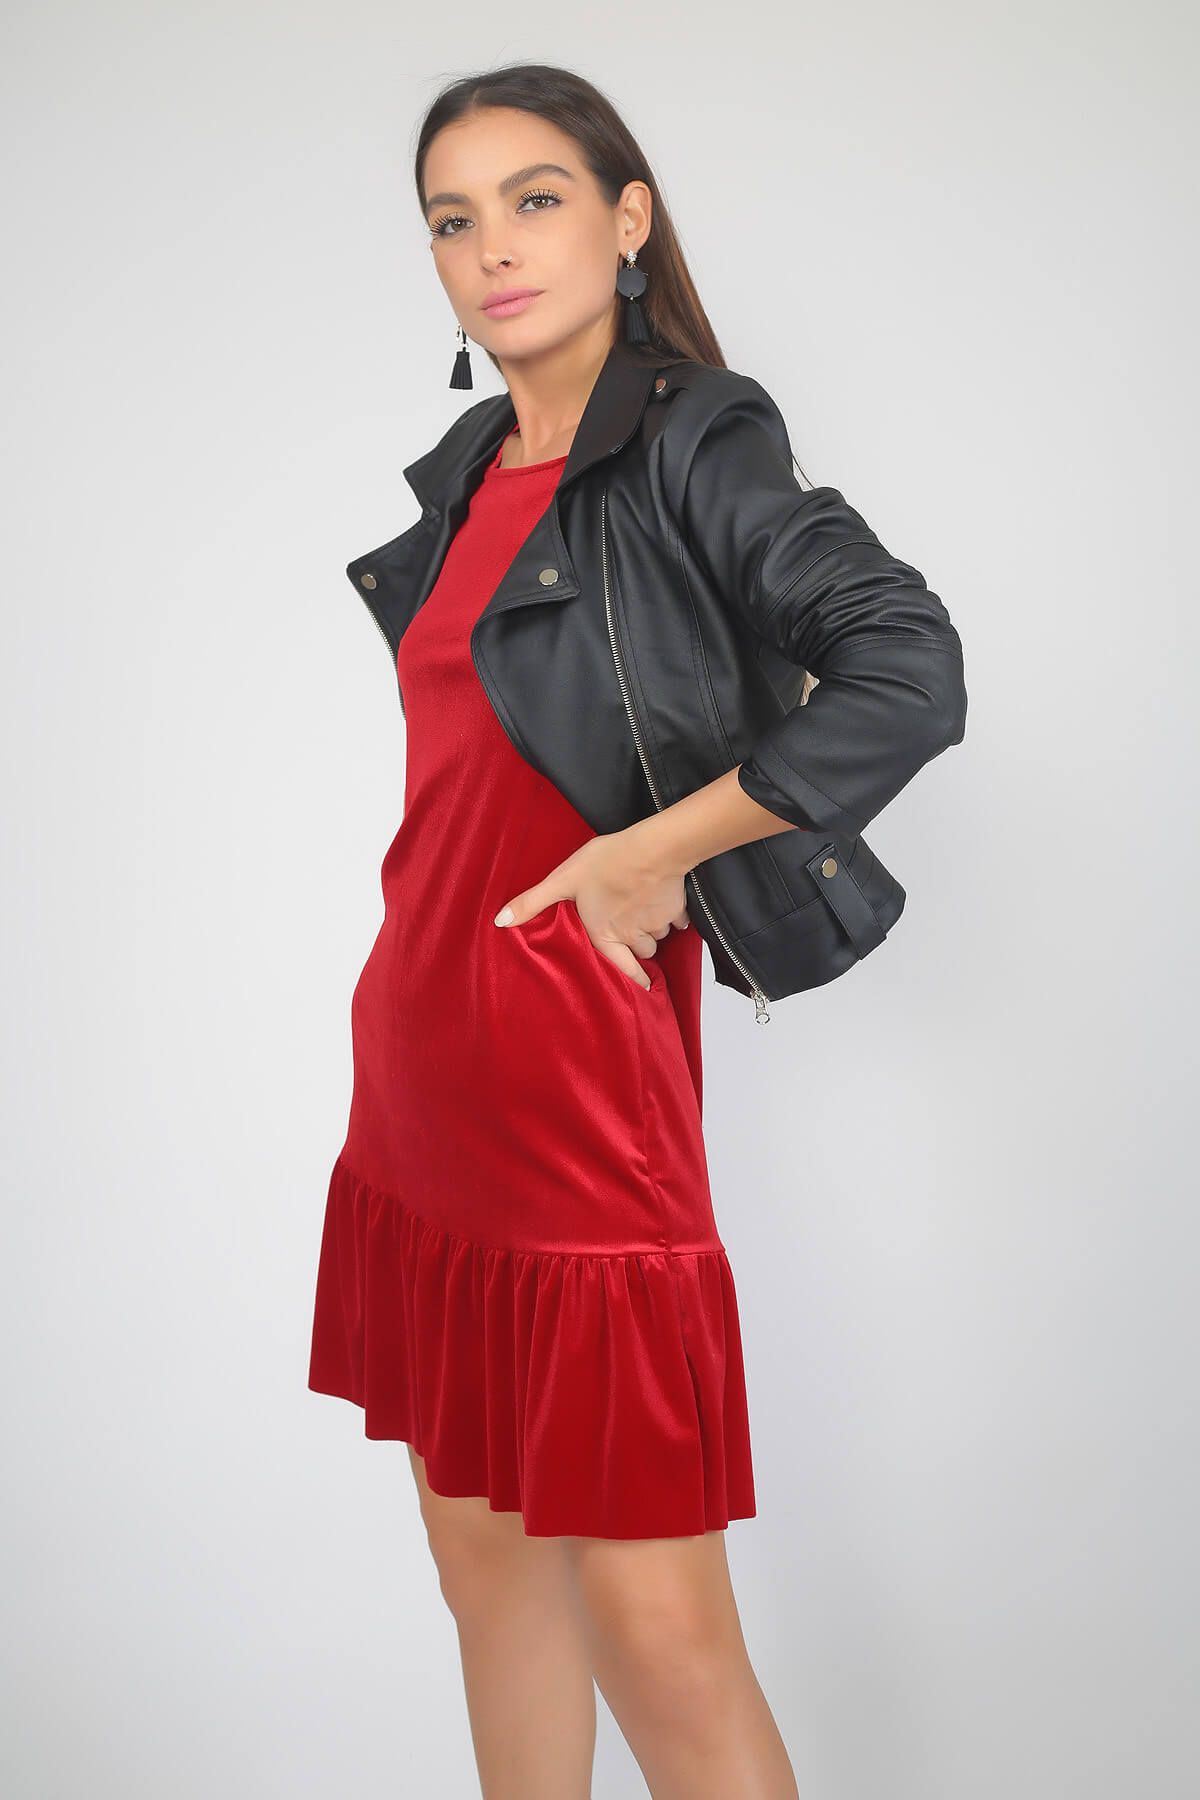 By Saygı Kadın Kırmızı Eteği Pileli Kadife Likra Elbise S-19K1320012